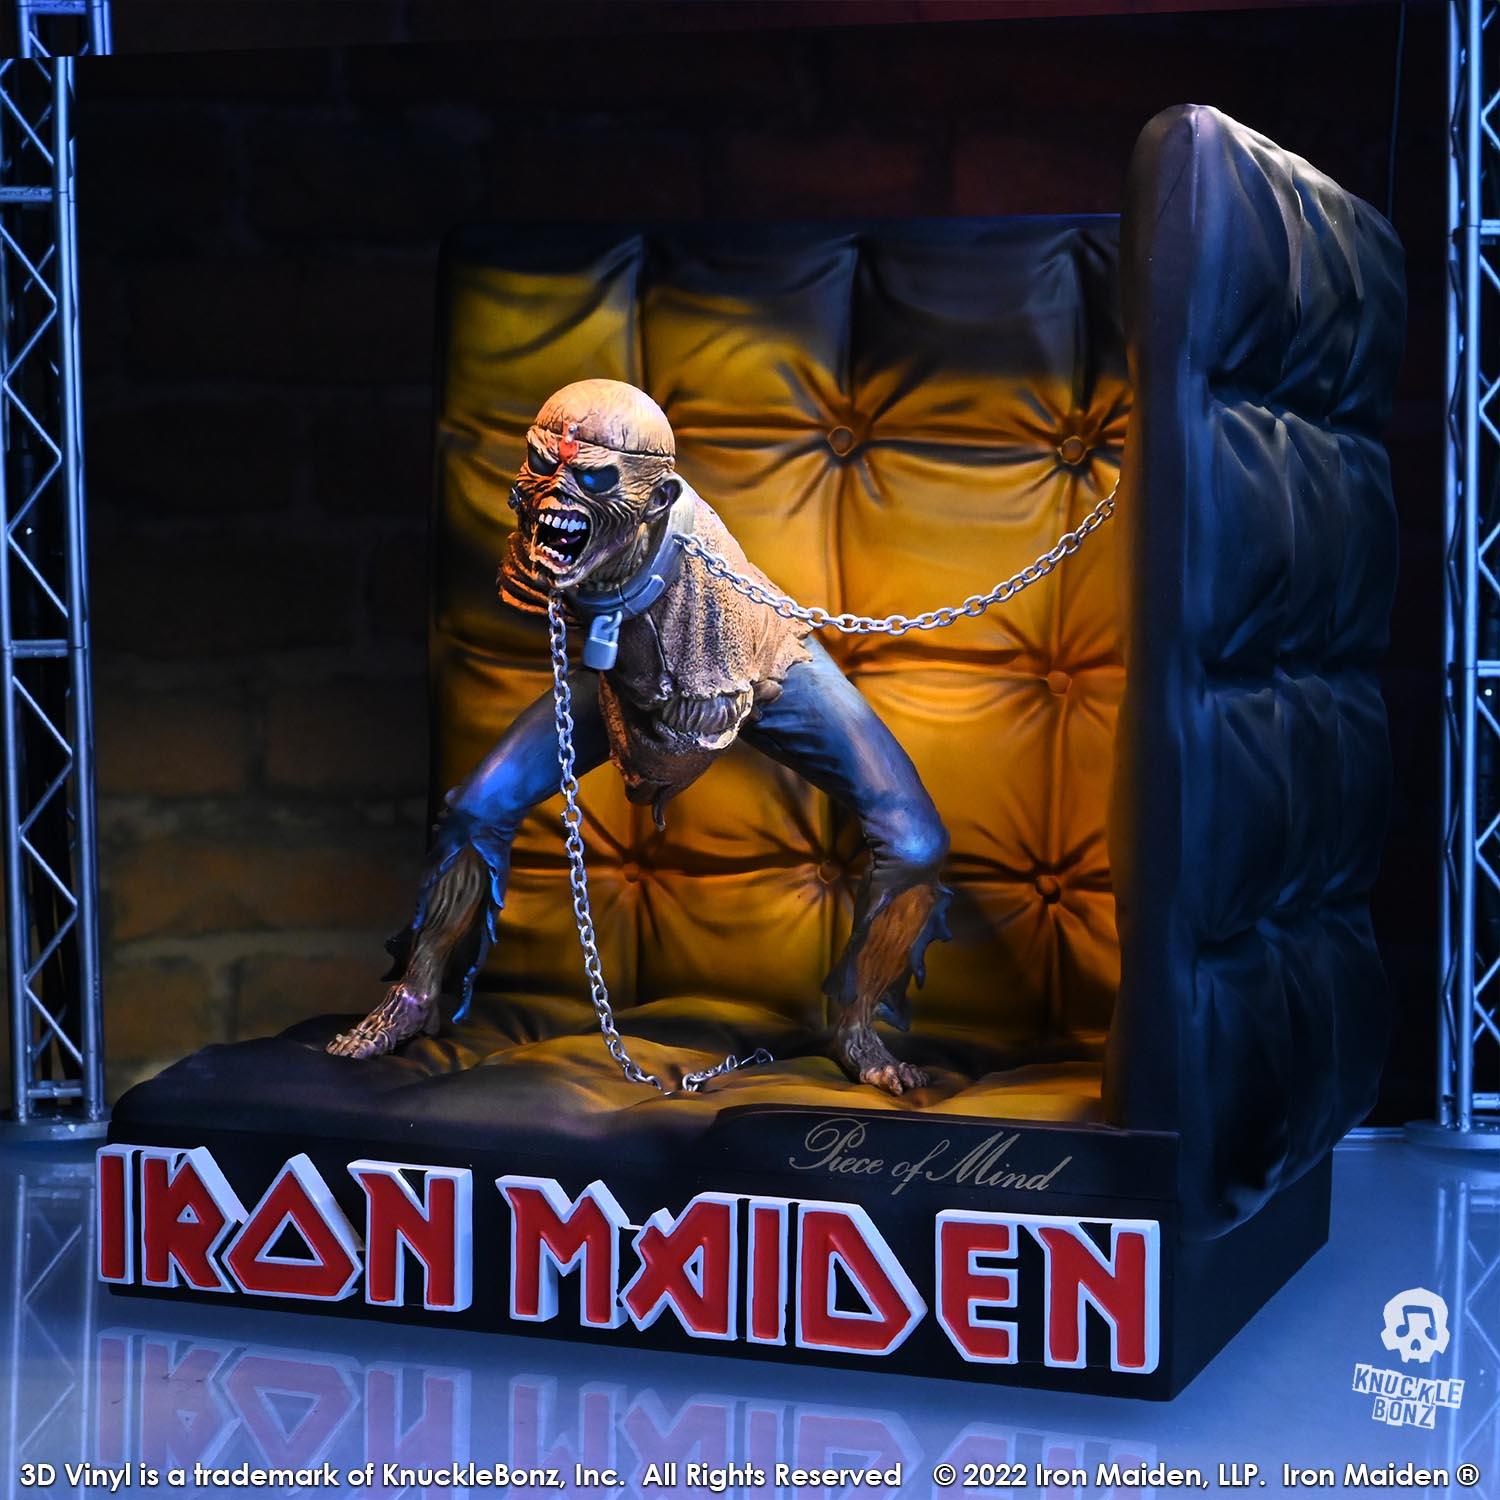 KNUIRONMAIDEN200 Iron Maiden - Piece of Mind 3D Vinyl Statue - KnuckleBonz - Titan Pop Culture